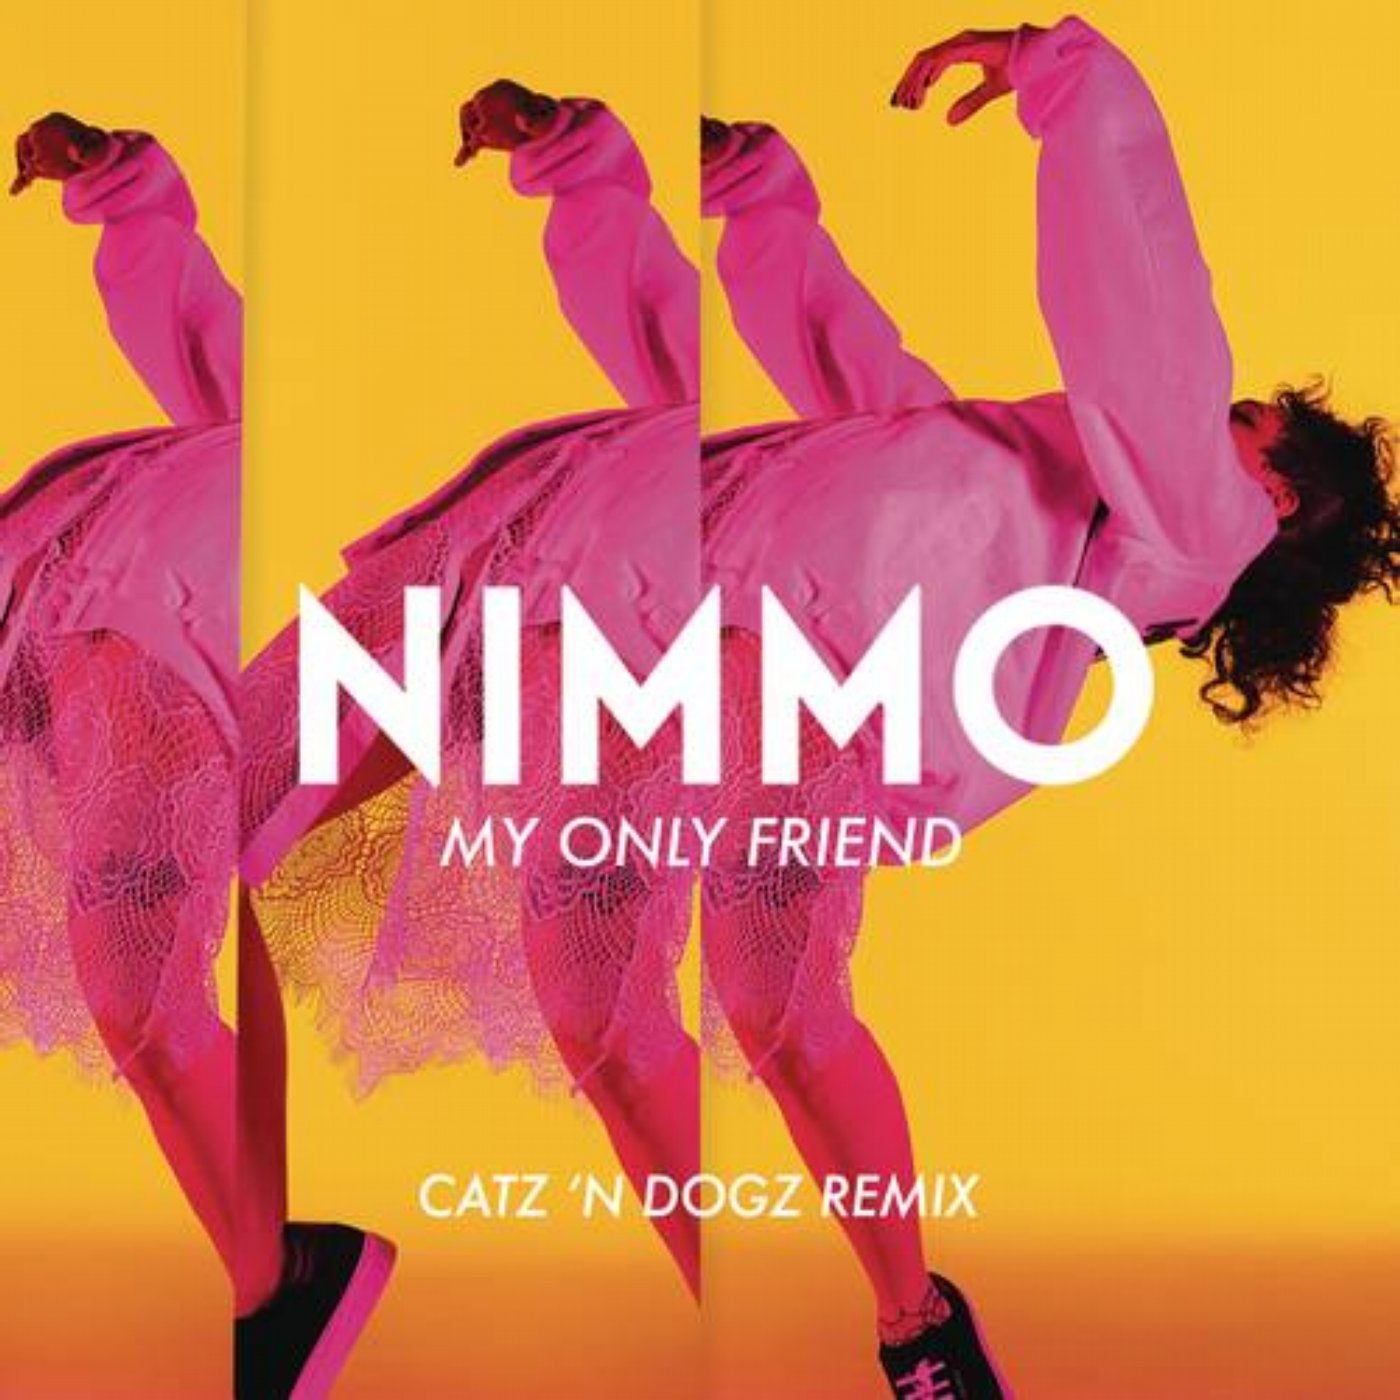 My Only Friend (Catz 'N Dogz Remix)